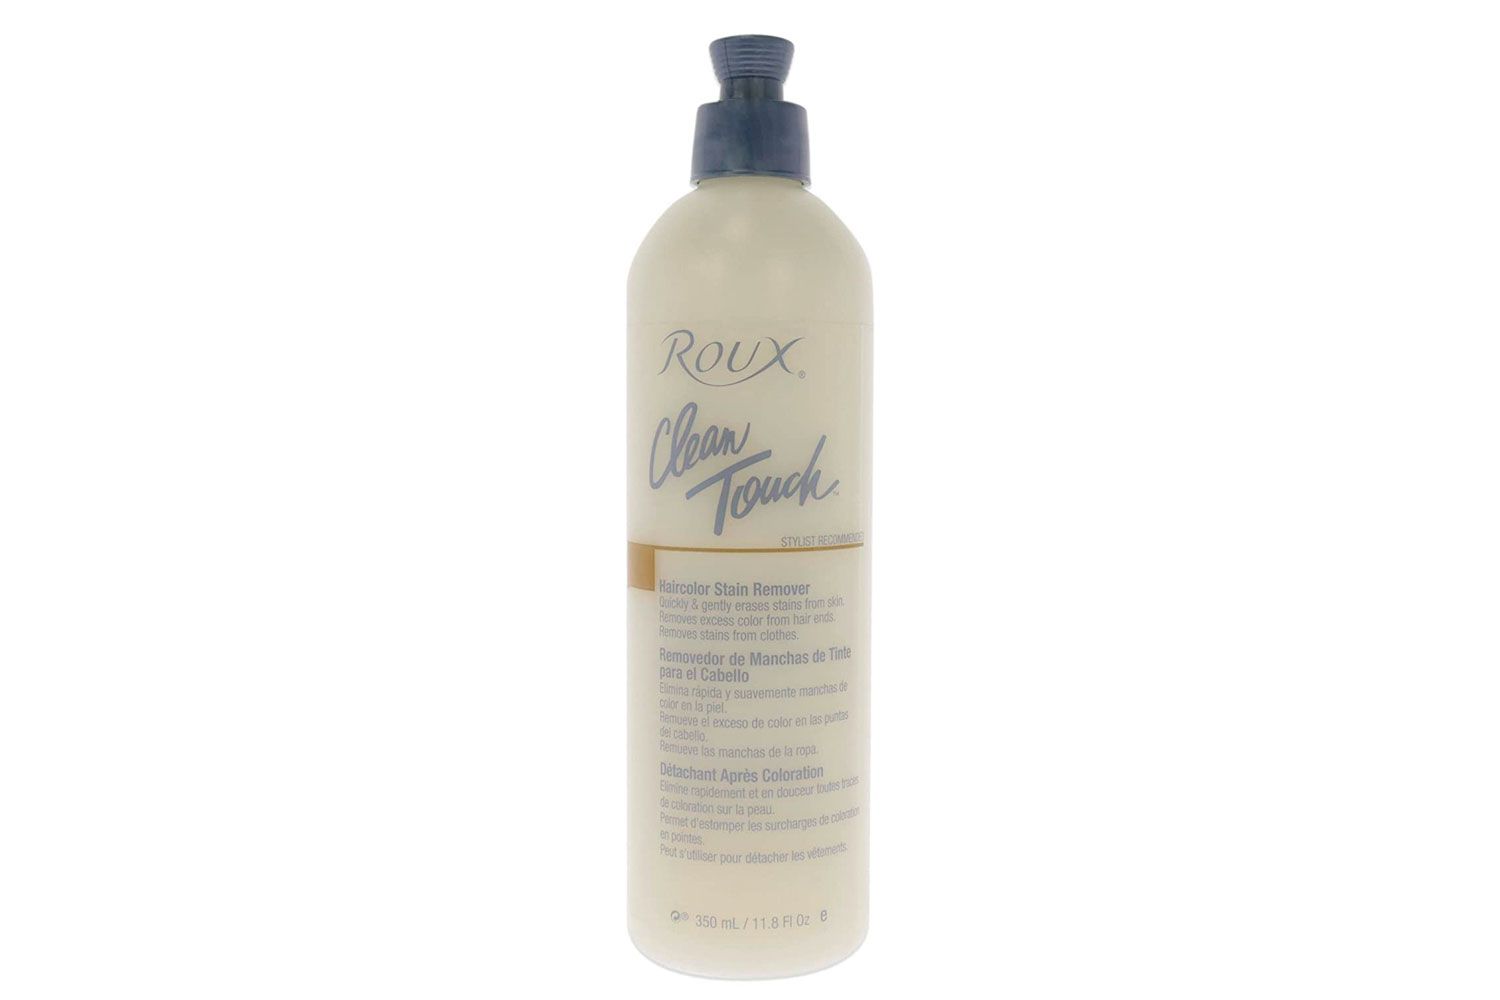 Roux Roux清洁摸头发的颜色除污剂11.8盎司,11.8盎司